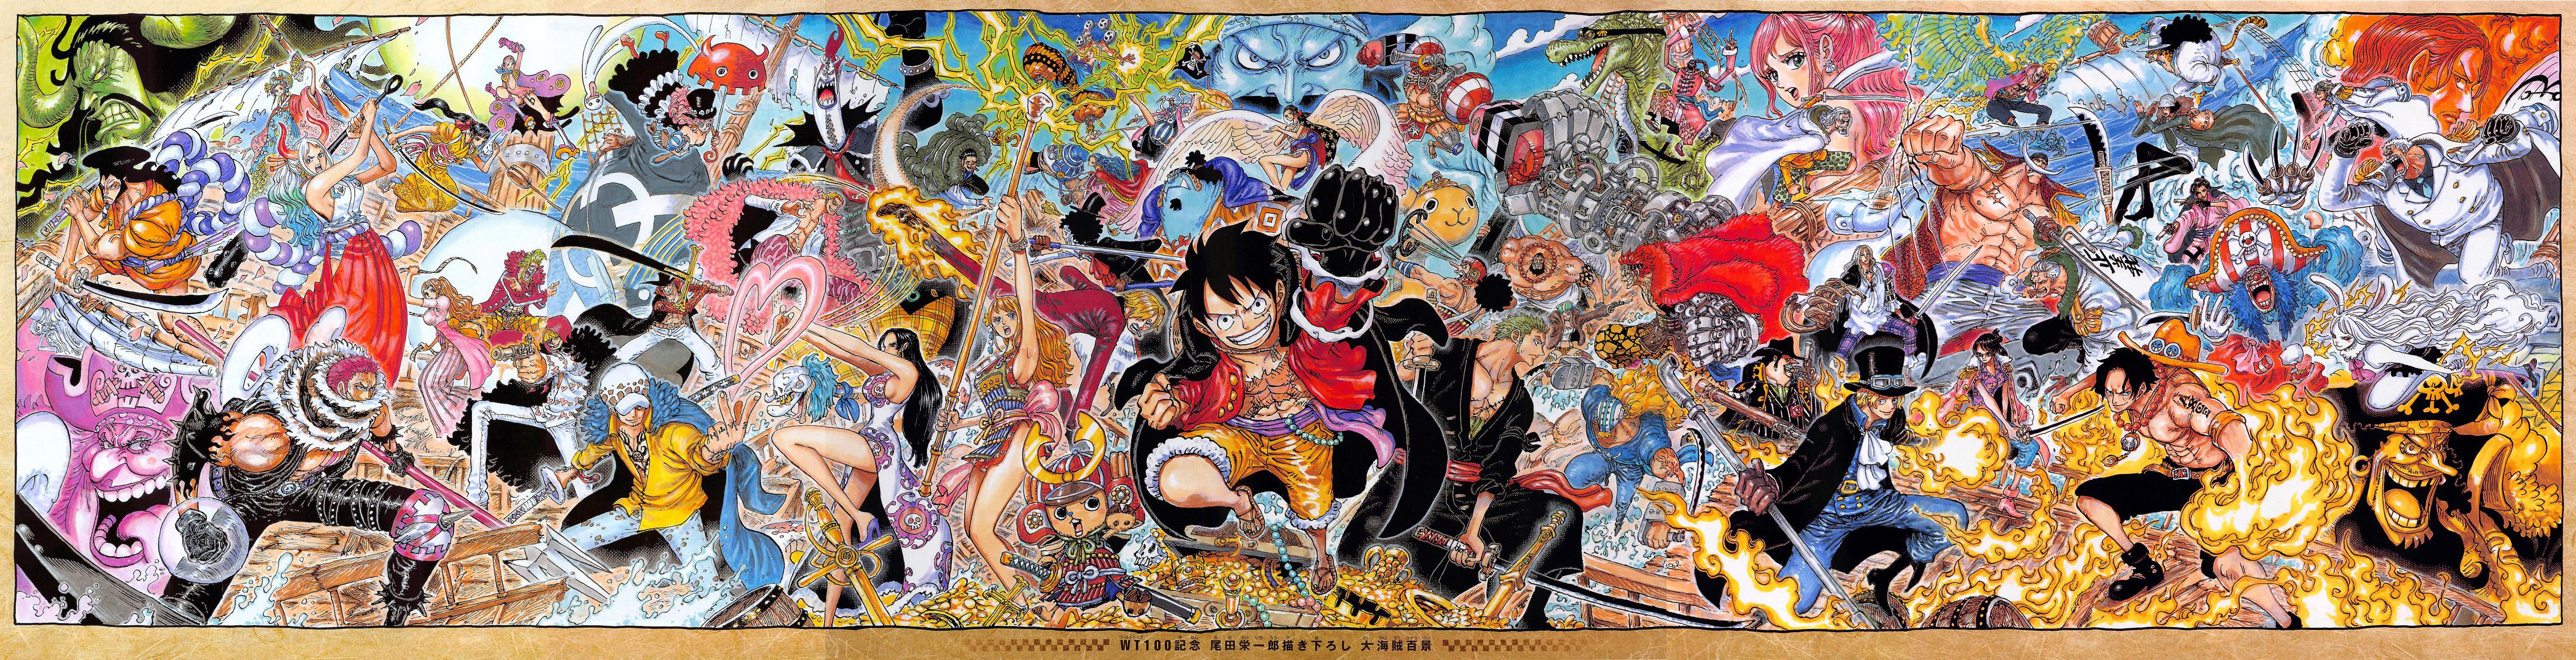 One Piece Manga Monkey D Luffy Roronoa Zoro Sanji Nami 5436x1392